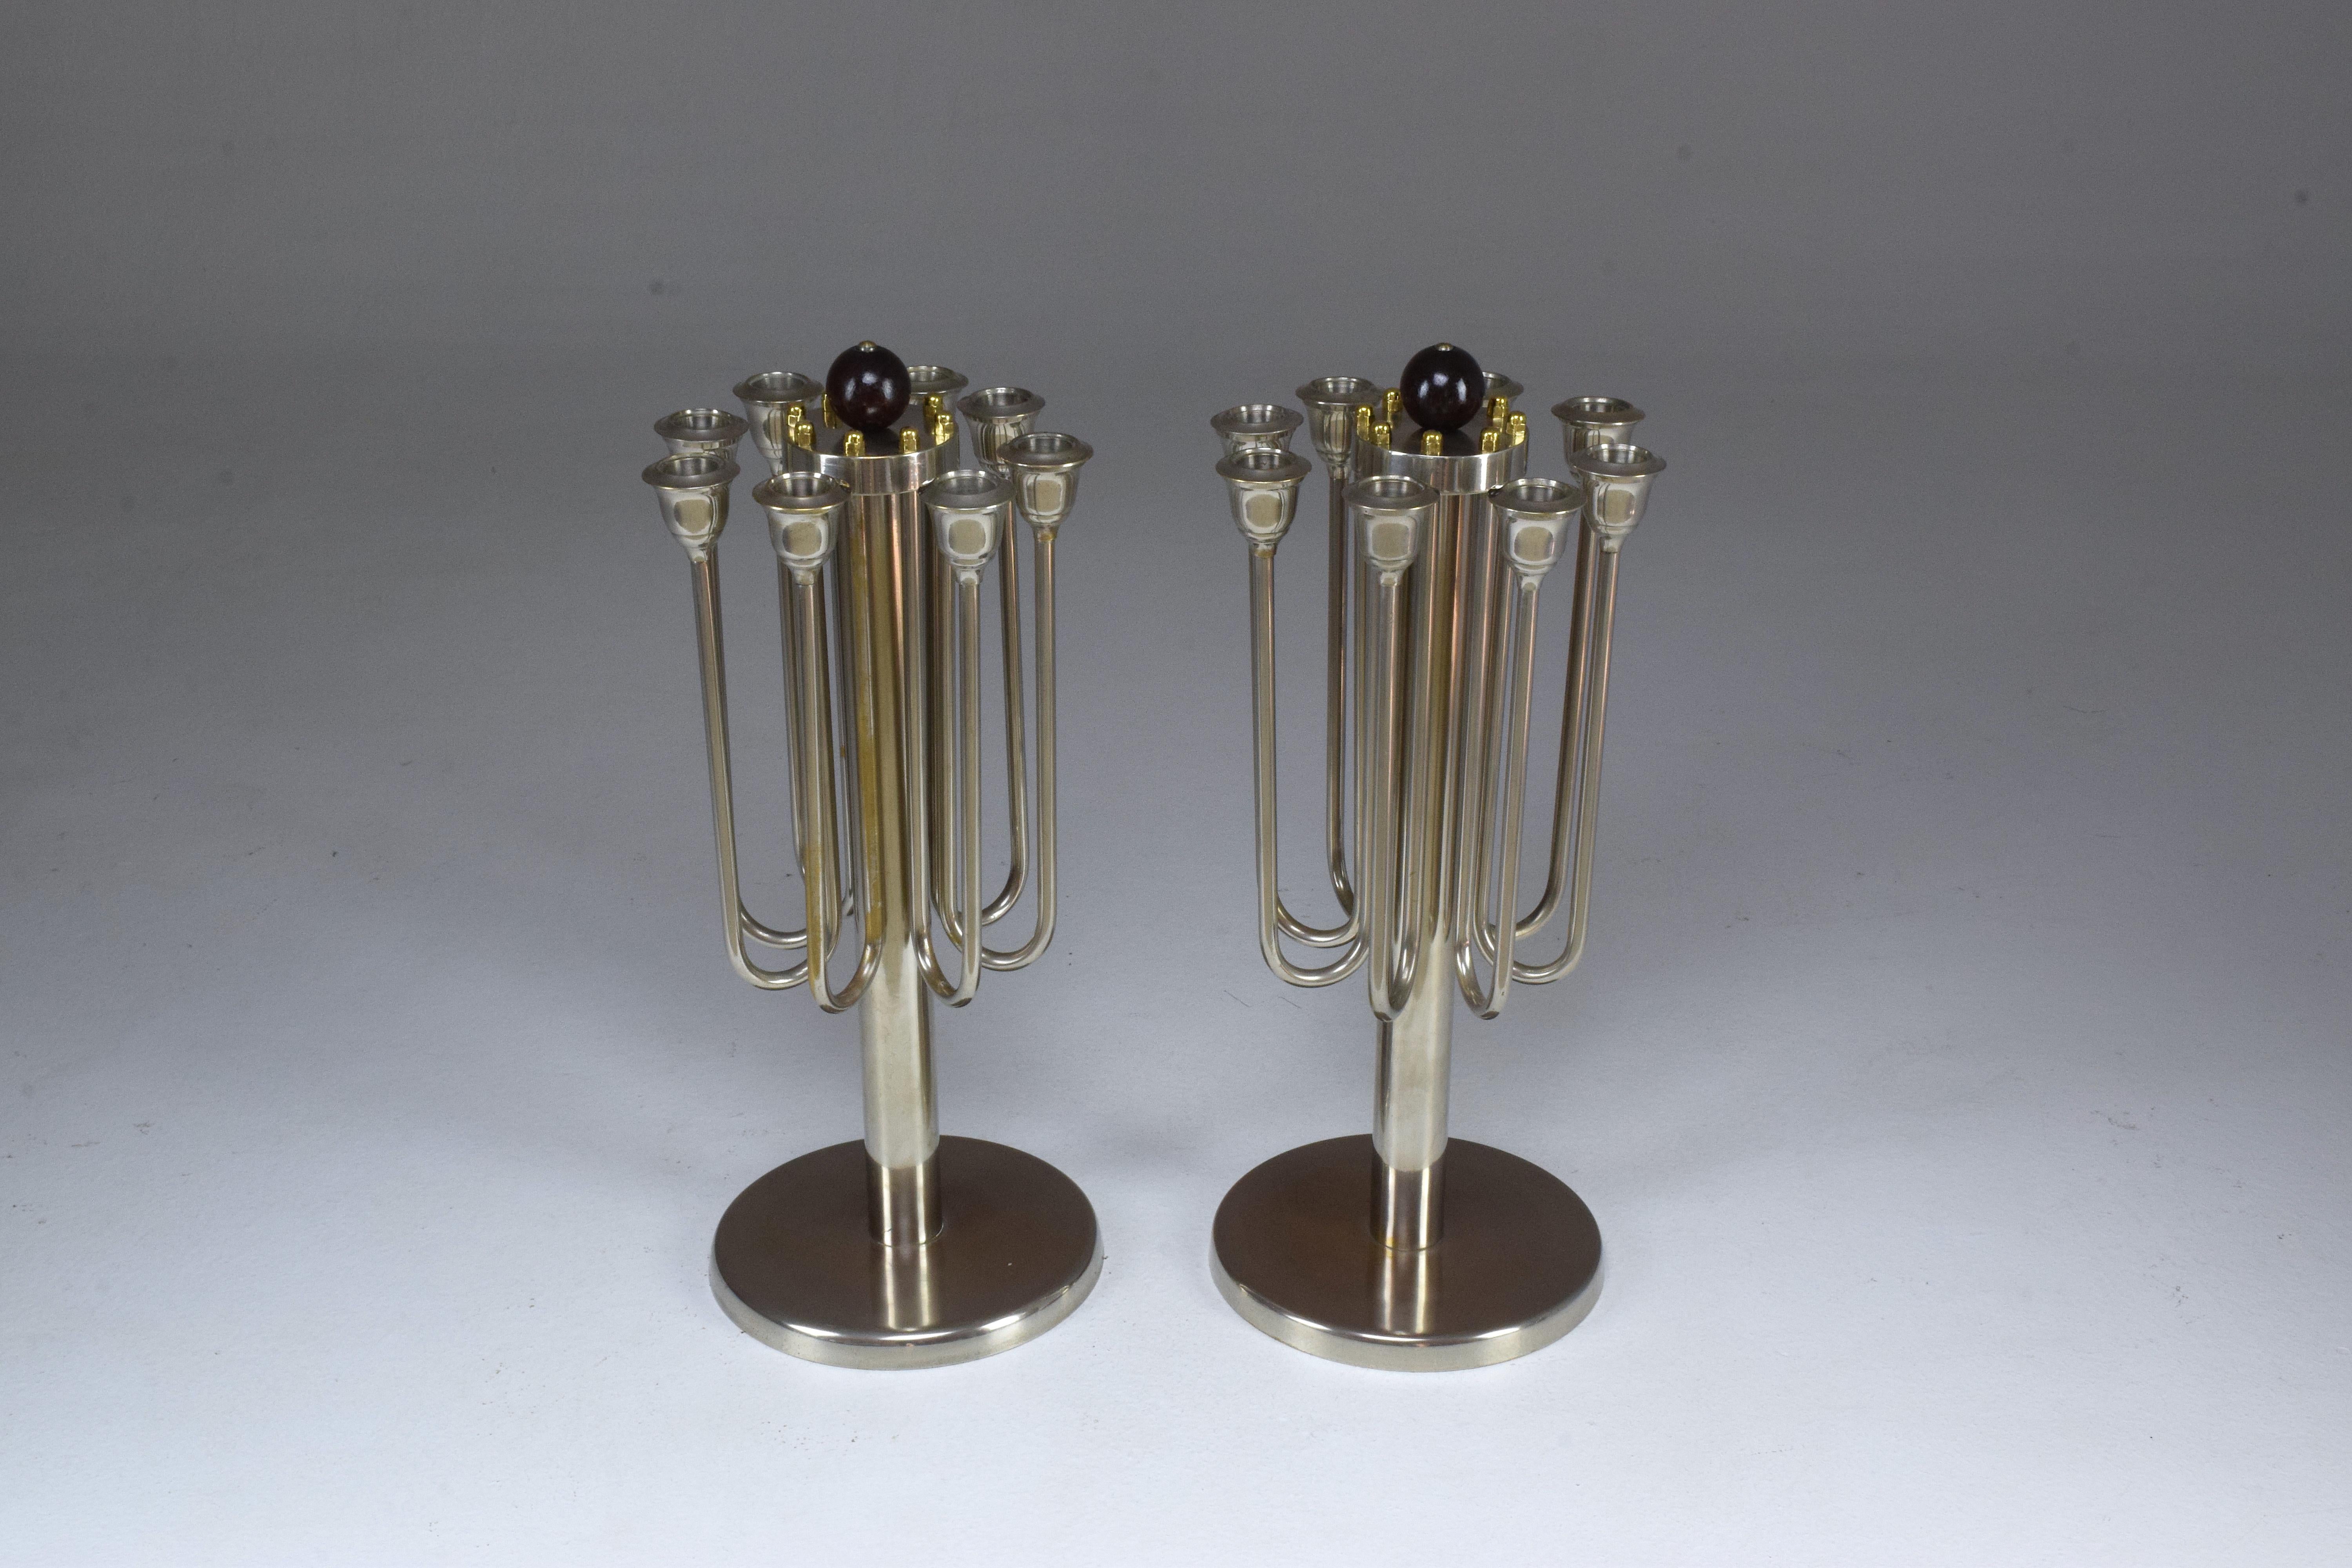 Ein atemberaubendes Paar französischer Art-Déco-Kerzenhalter aus dem 20. Jahrhundert, bestehend aus vernickeltem Messing, goldpolierten Messingdetails und einem hölzernen bouleförmigen Detail an der Spitze. Jedes Stück fasst 8 Kerzen. Eine elegante